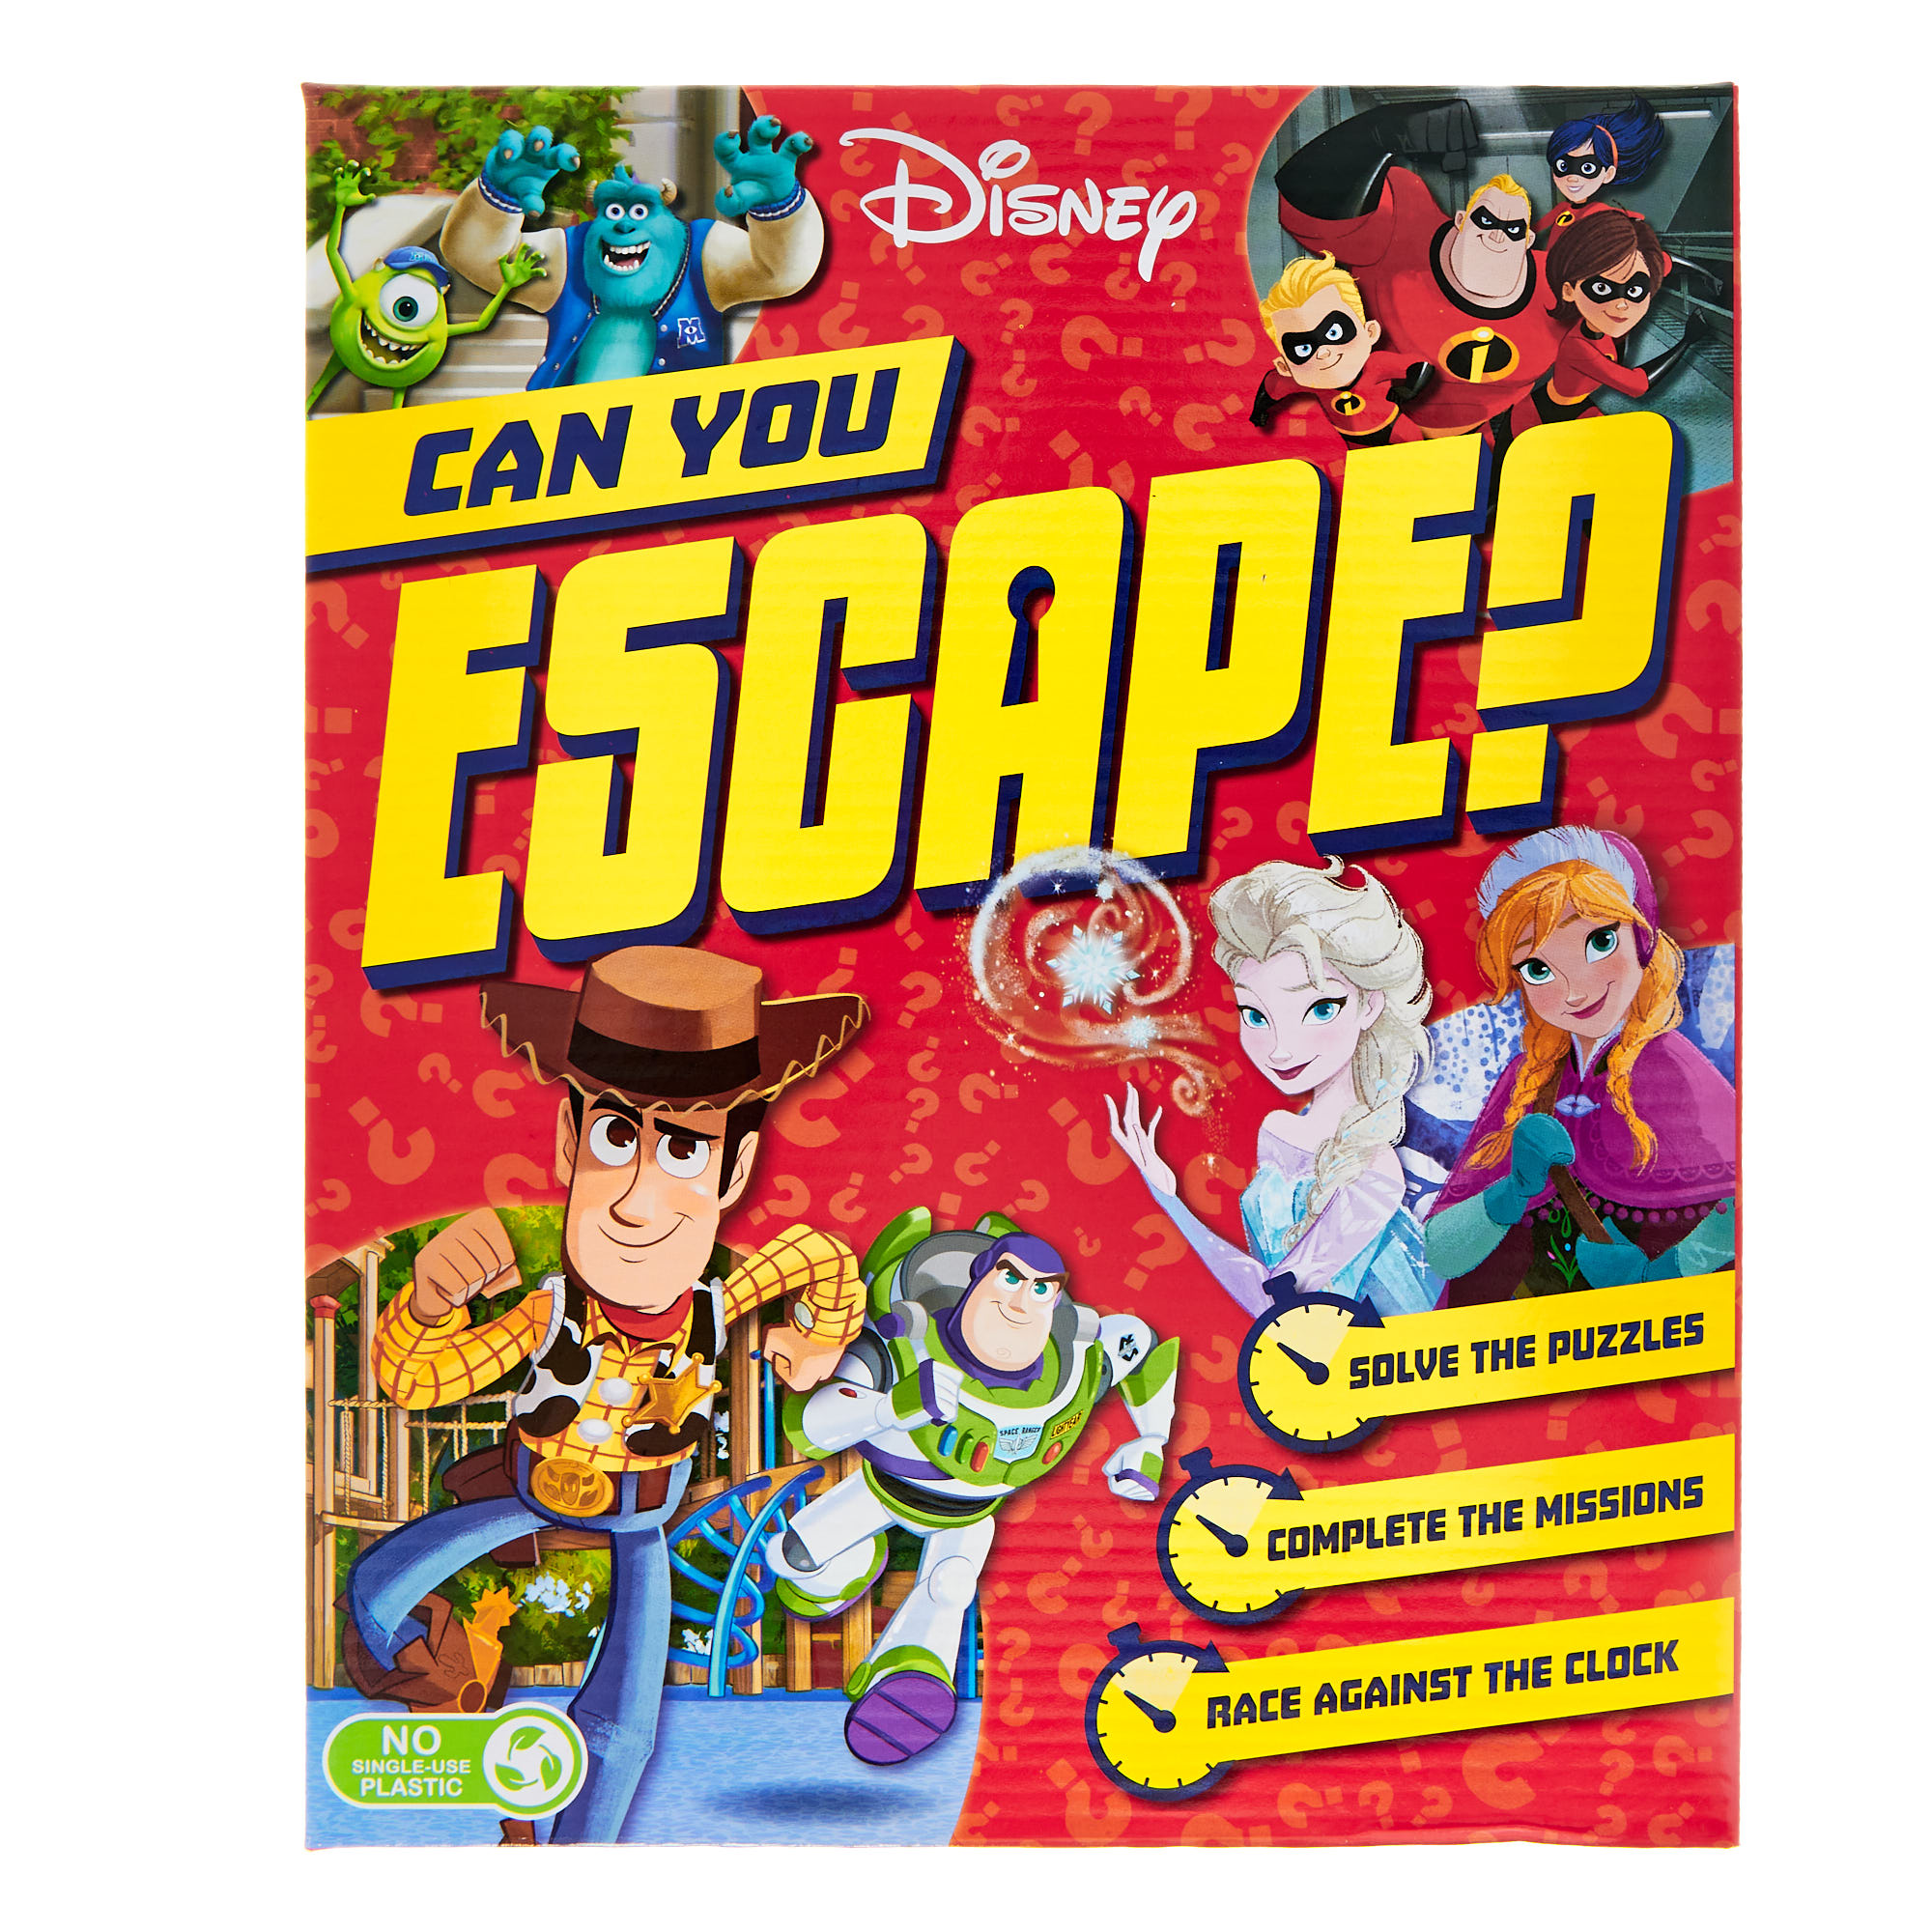 Disney 'Can You Escape?' Game